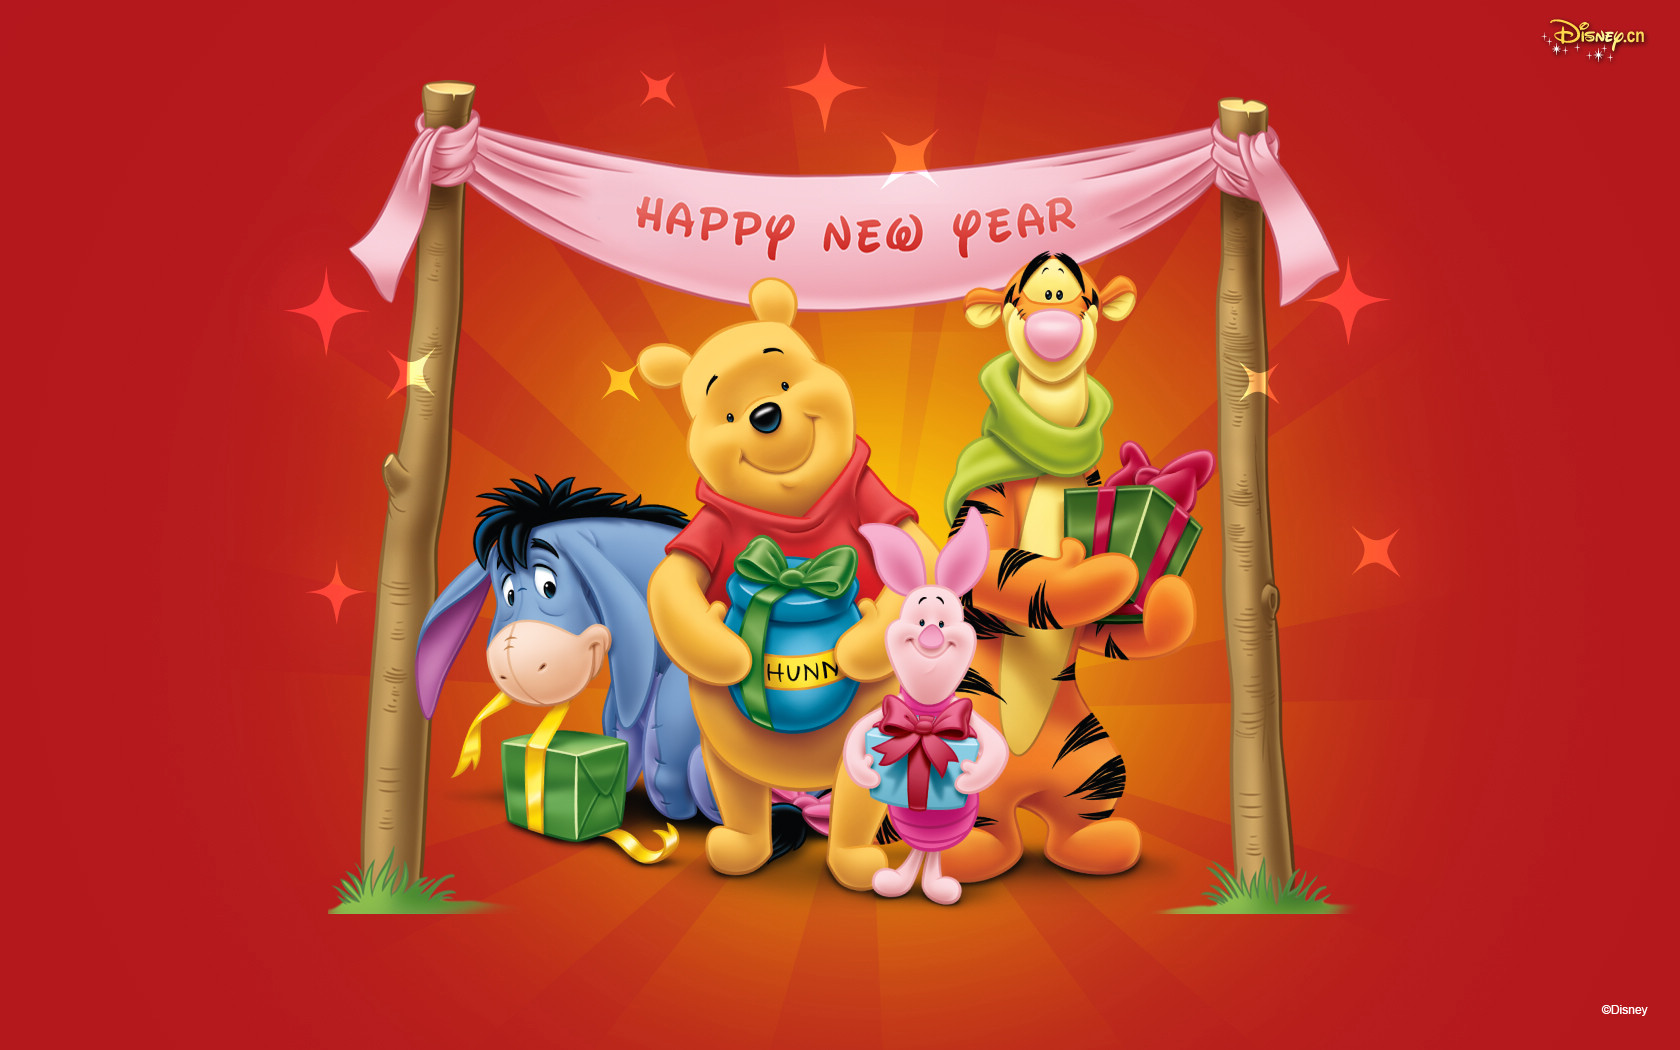 お正月 ディズニー くまのプーさん Winnie The Pooh Pcデスクトップ壁紙 画像 高画質 Naver まとめ